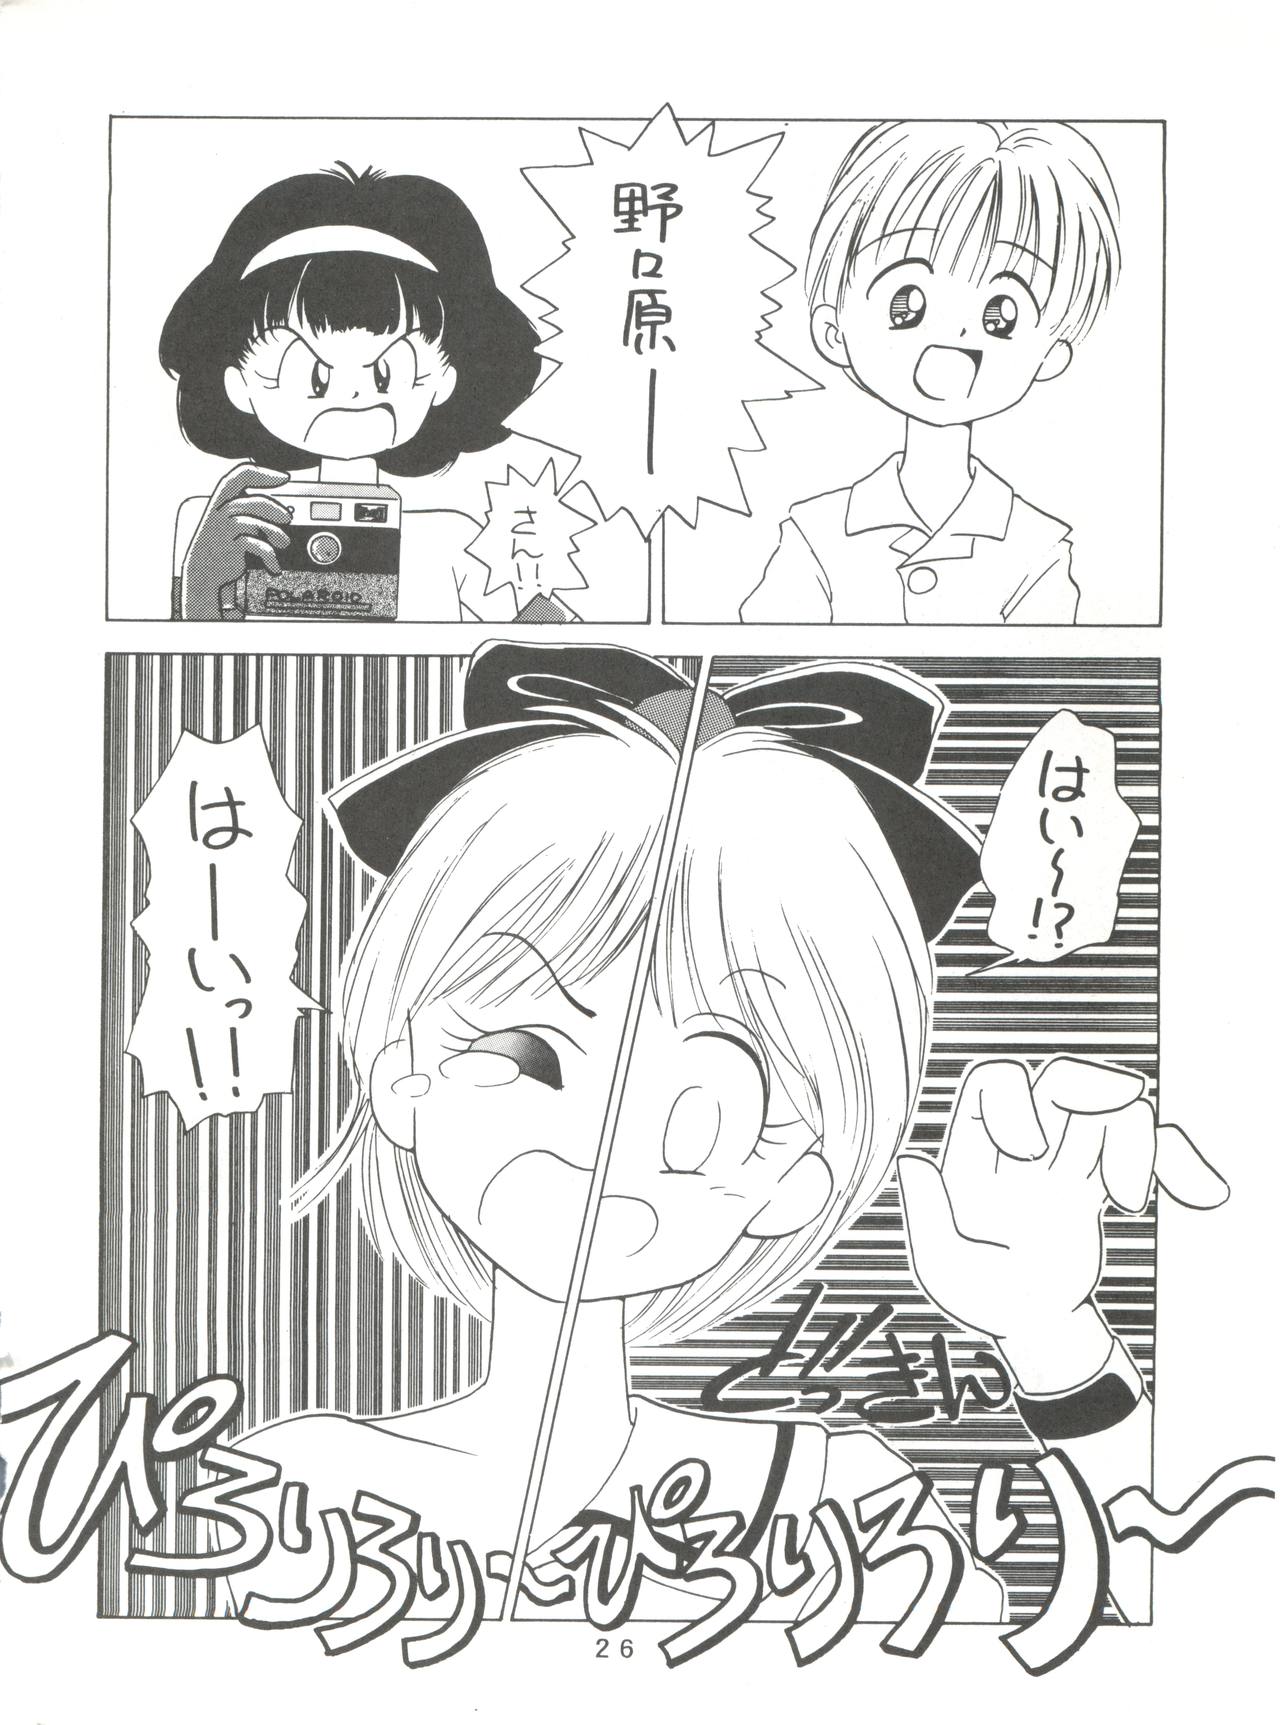 [Mitsuiri House]  MI 16 Mitsuiri House 6 (Hime-chan's Ribbon) + [Ariari no Nashinashi] See You Again 10 (Various) page 26 full